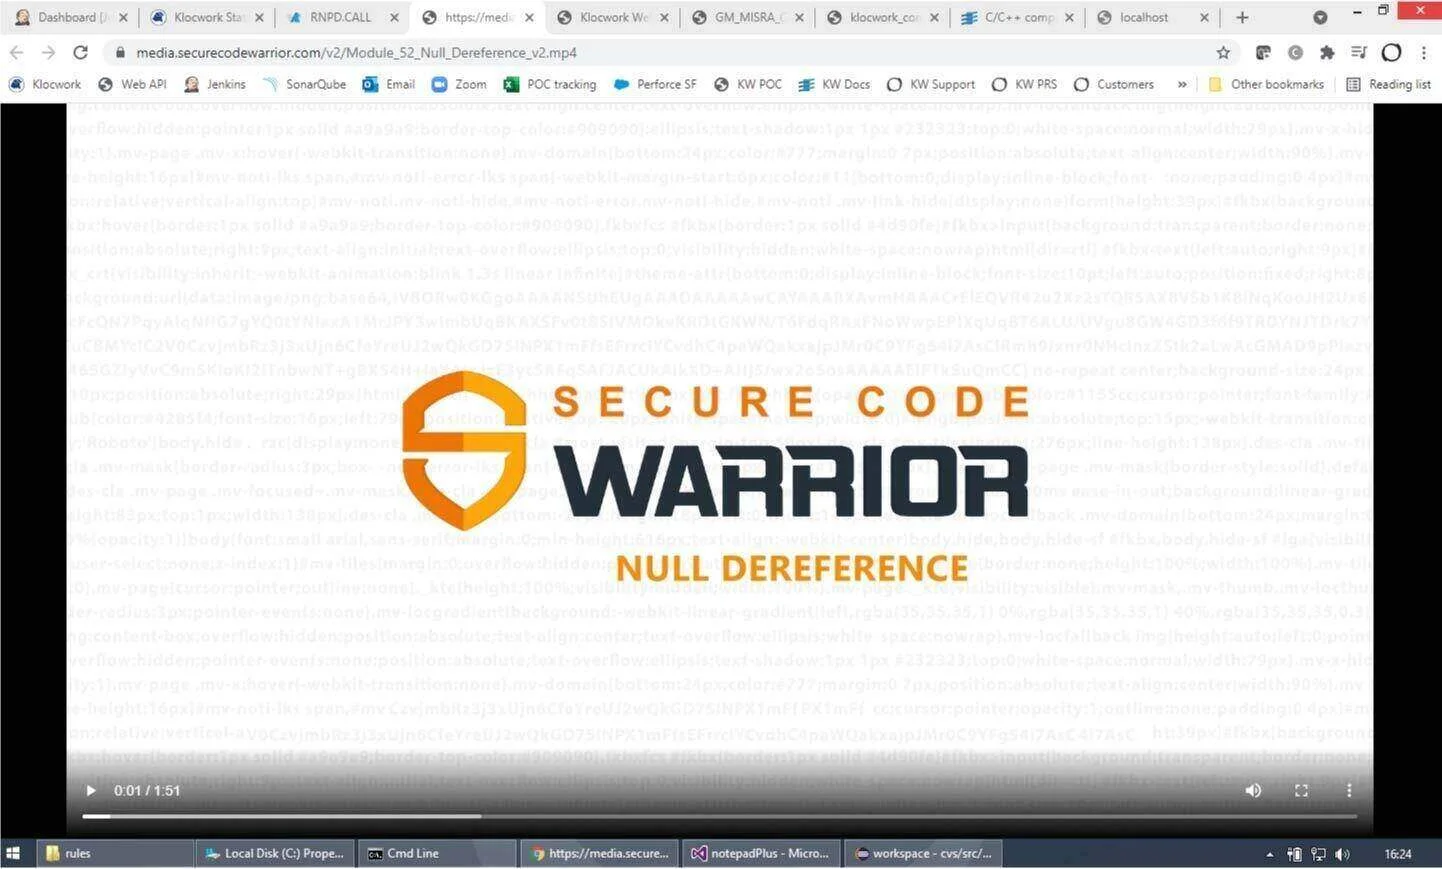 Warrior Software